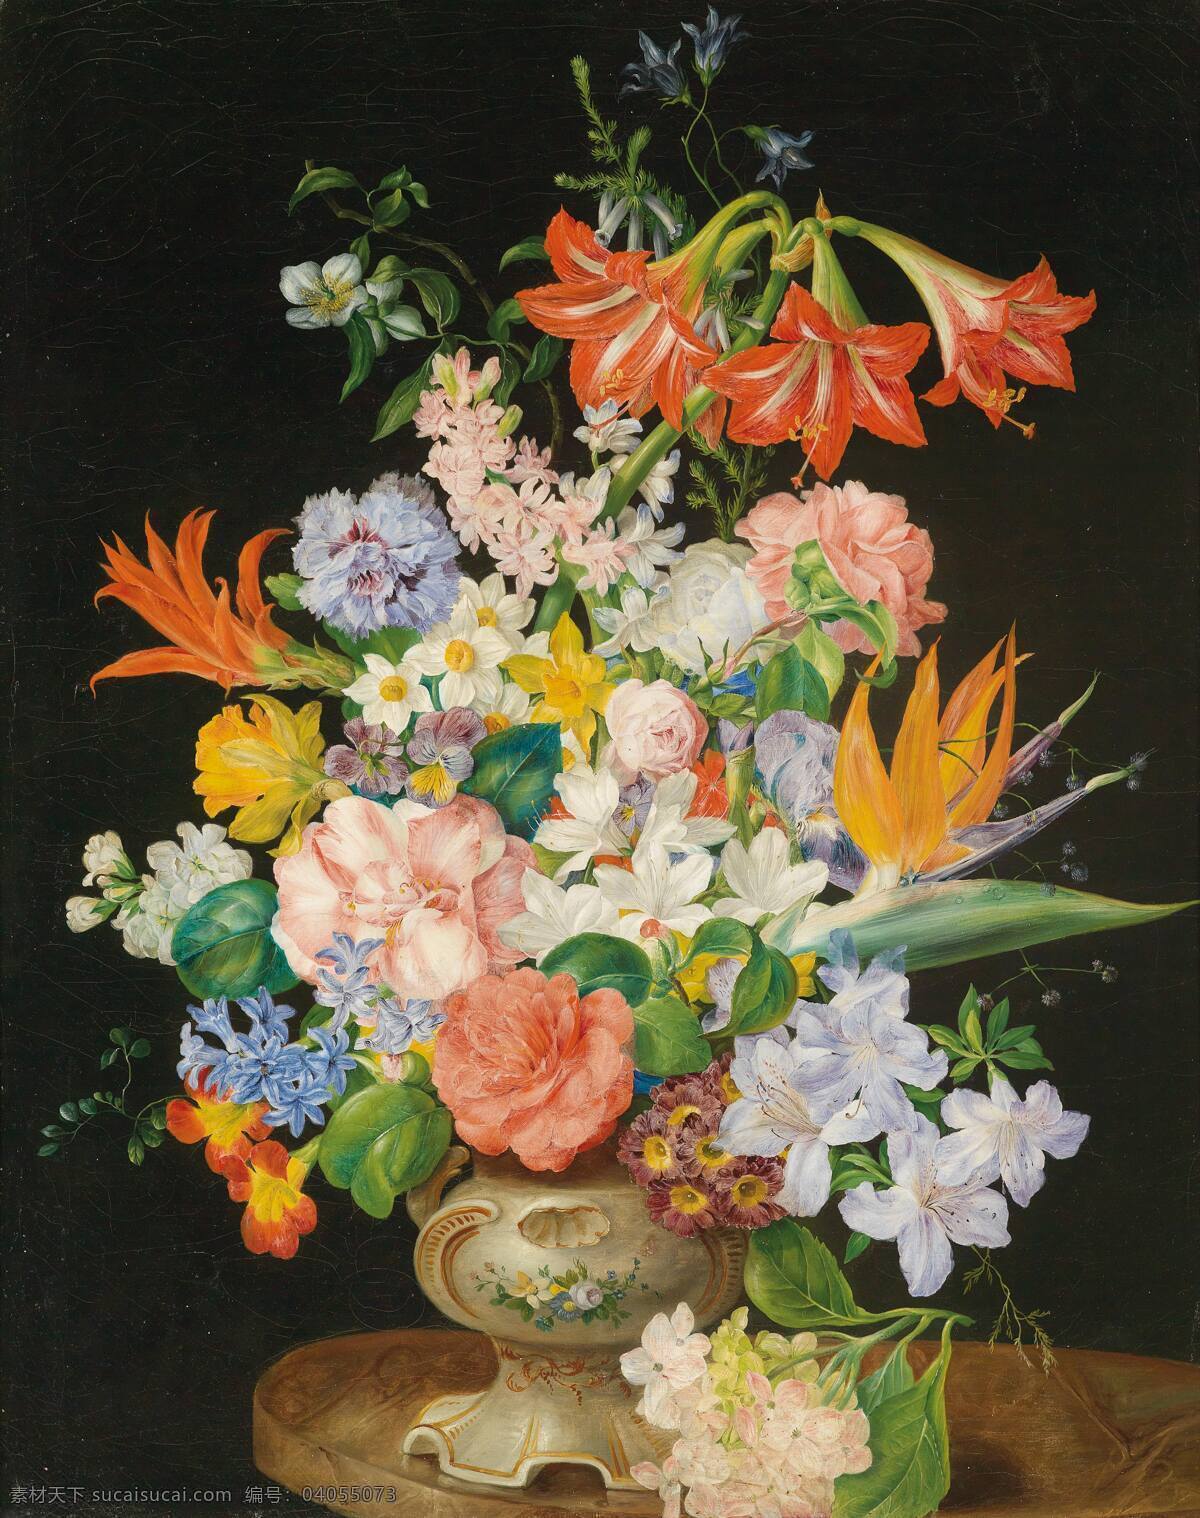 静物鲜花 混搭鲜花 永恒之美 欧式花瓶 台子 花卉 20世纪油画 油画 绘画书法 文化艺术